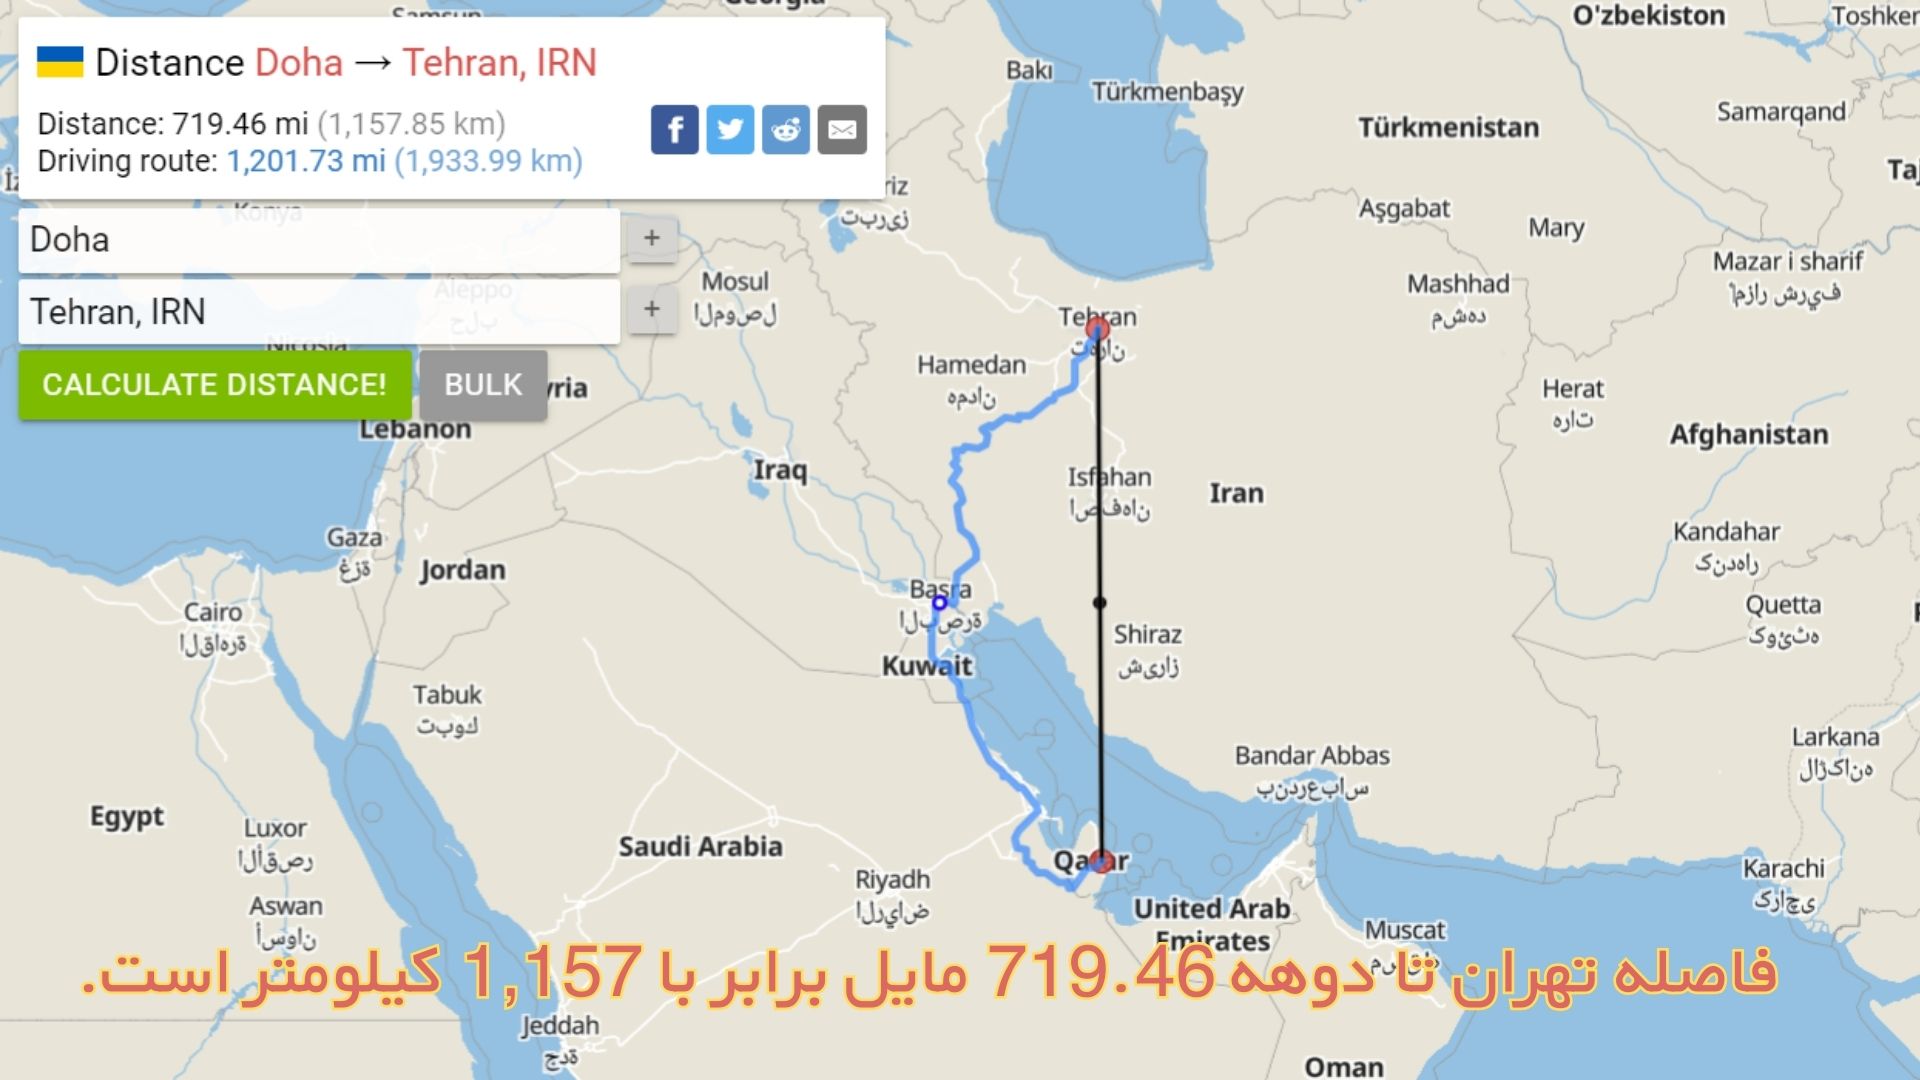 فاصله تهران تا دوهه 719.46 مایل برابر با 1,157 کیلومتر است.